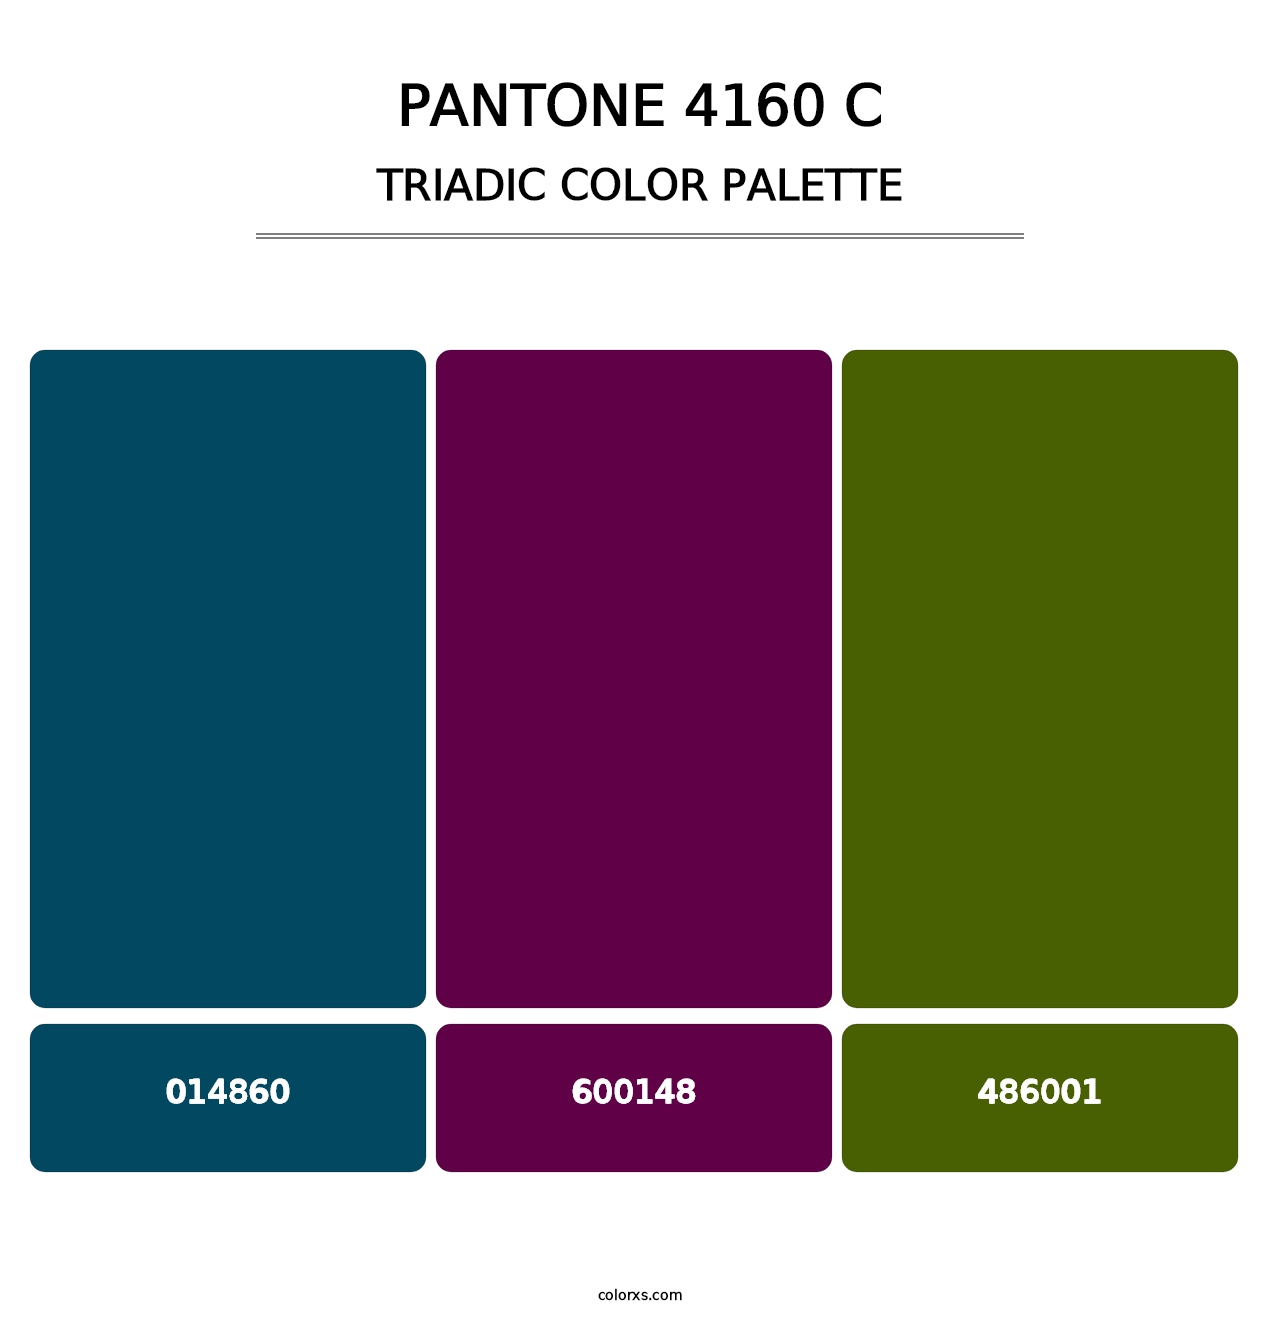 PANTONE 4160 C - Triadic Color Palette